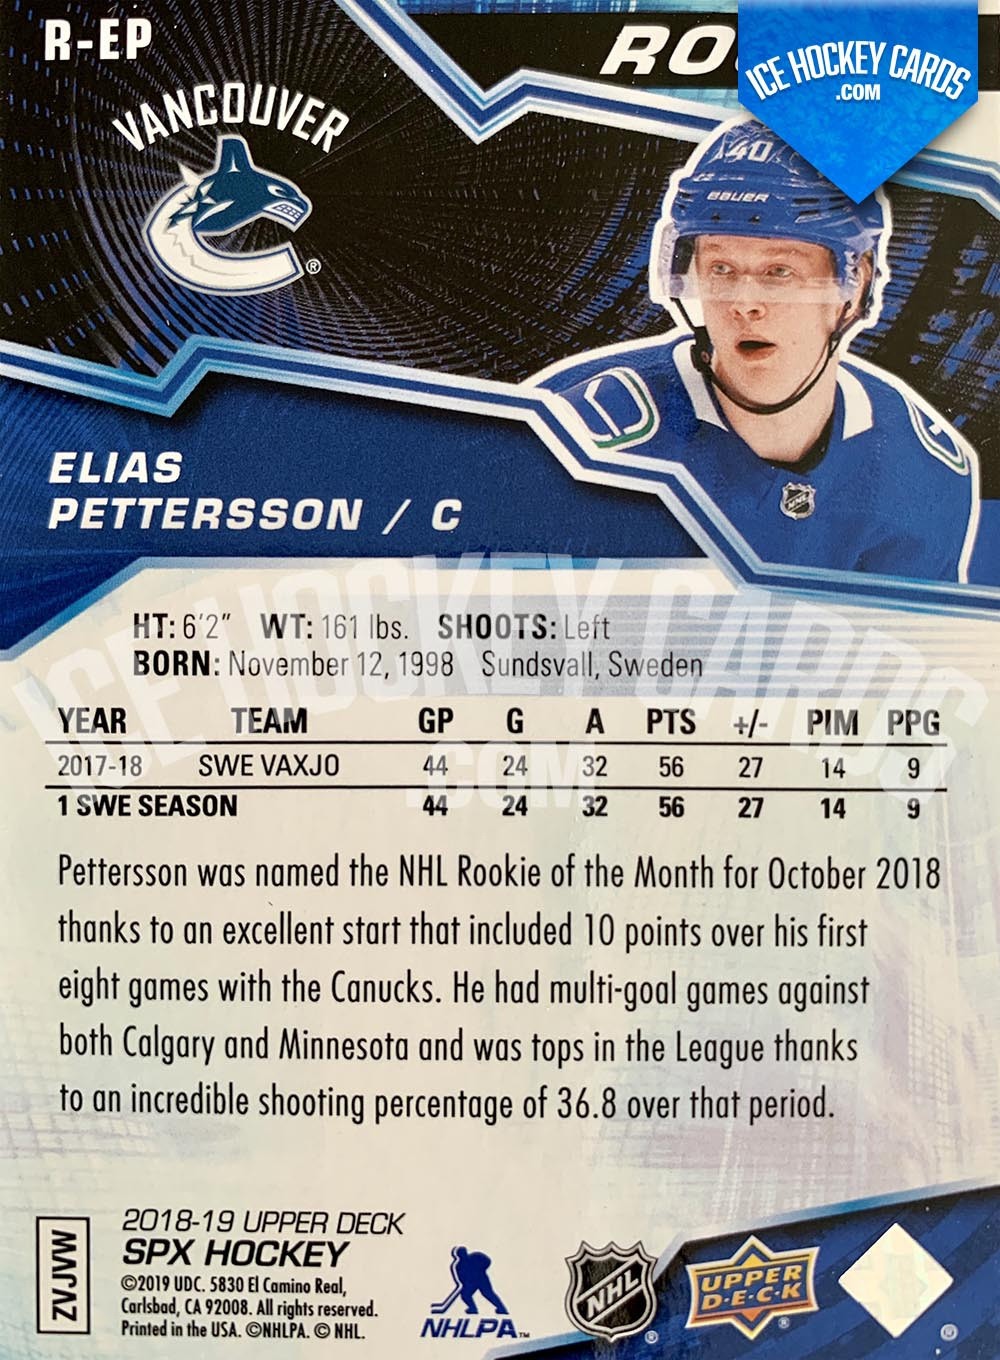 Upper Deck - SPx 2018-19 - Elias Pettersson Base Rookie Card back